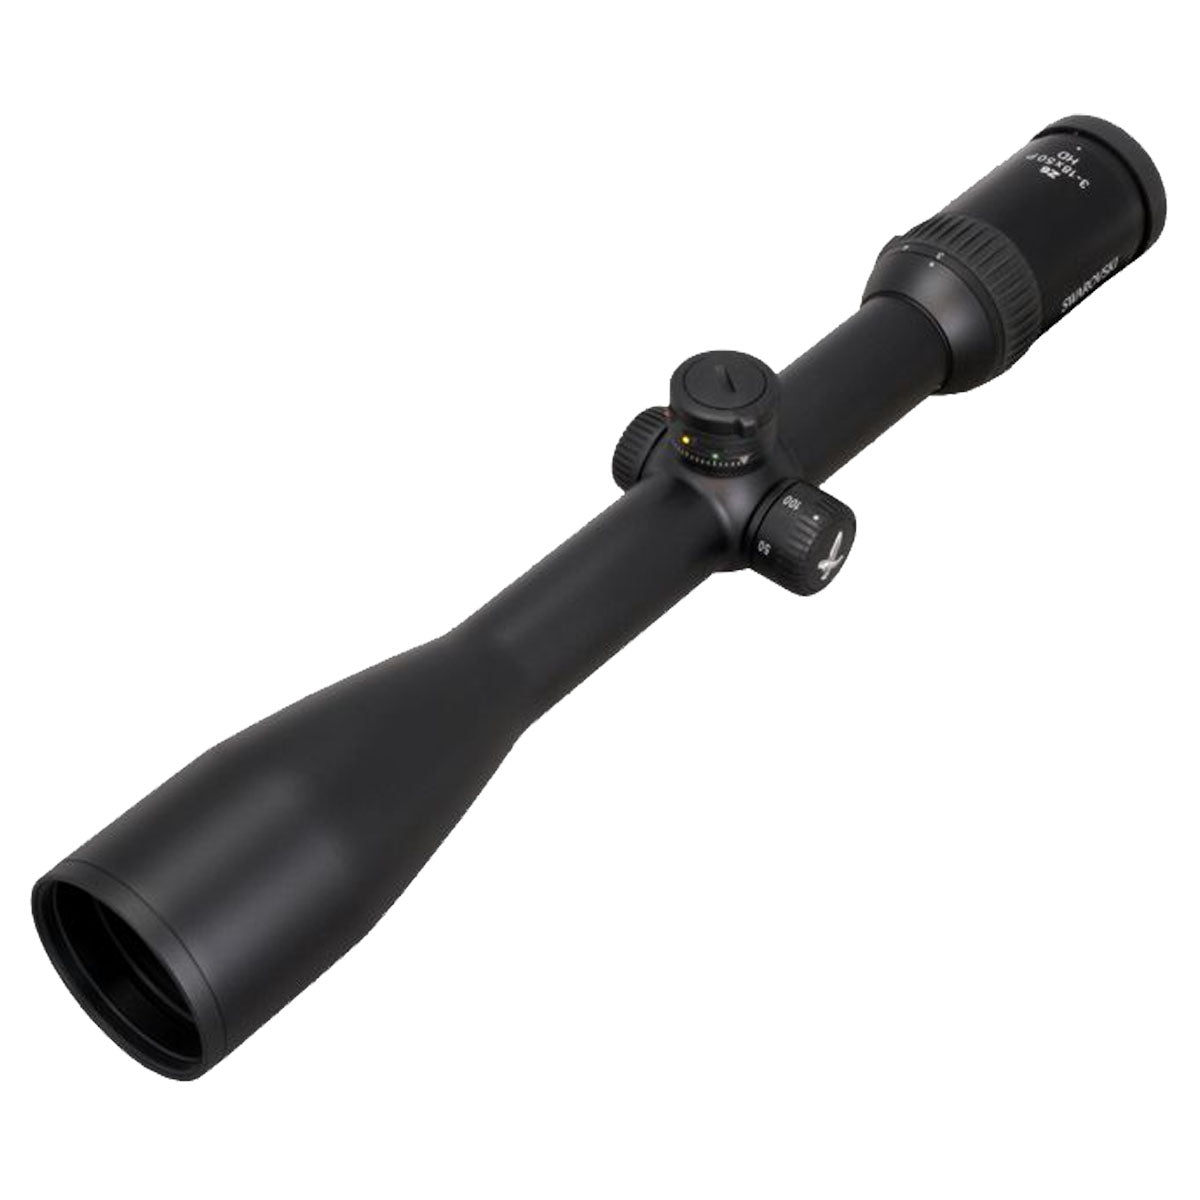 Swarovski Z6 3-18x50 - BT - PLEX Riflescope in  by GOHUNT | Swarovski Optik - GOHUNT Shop